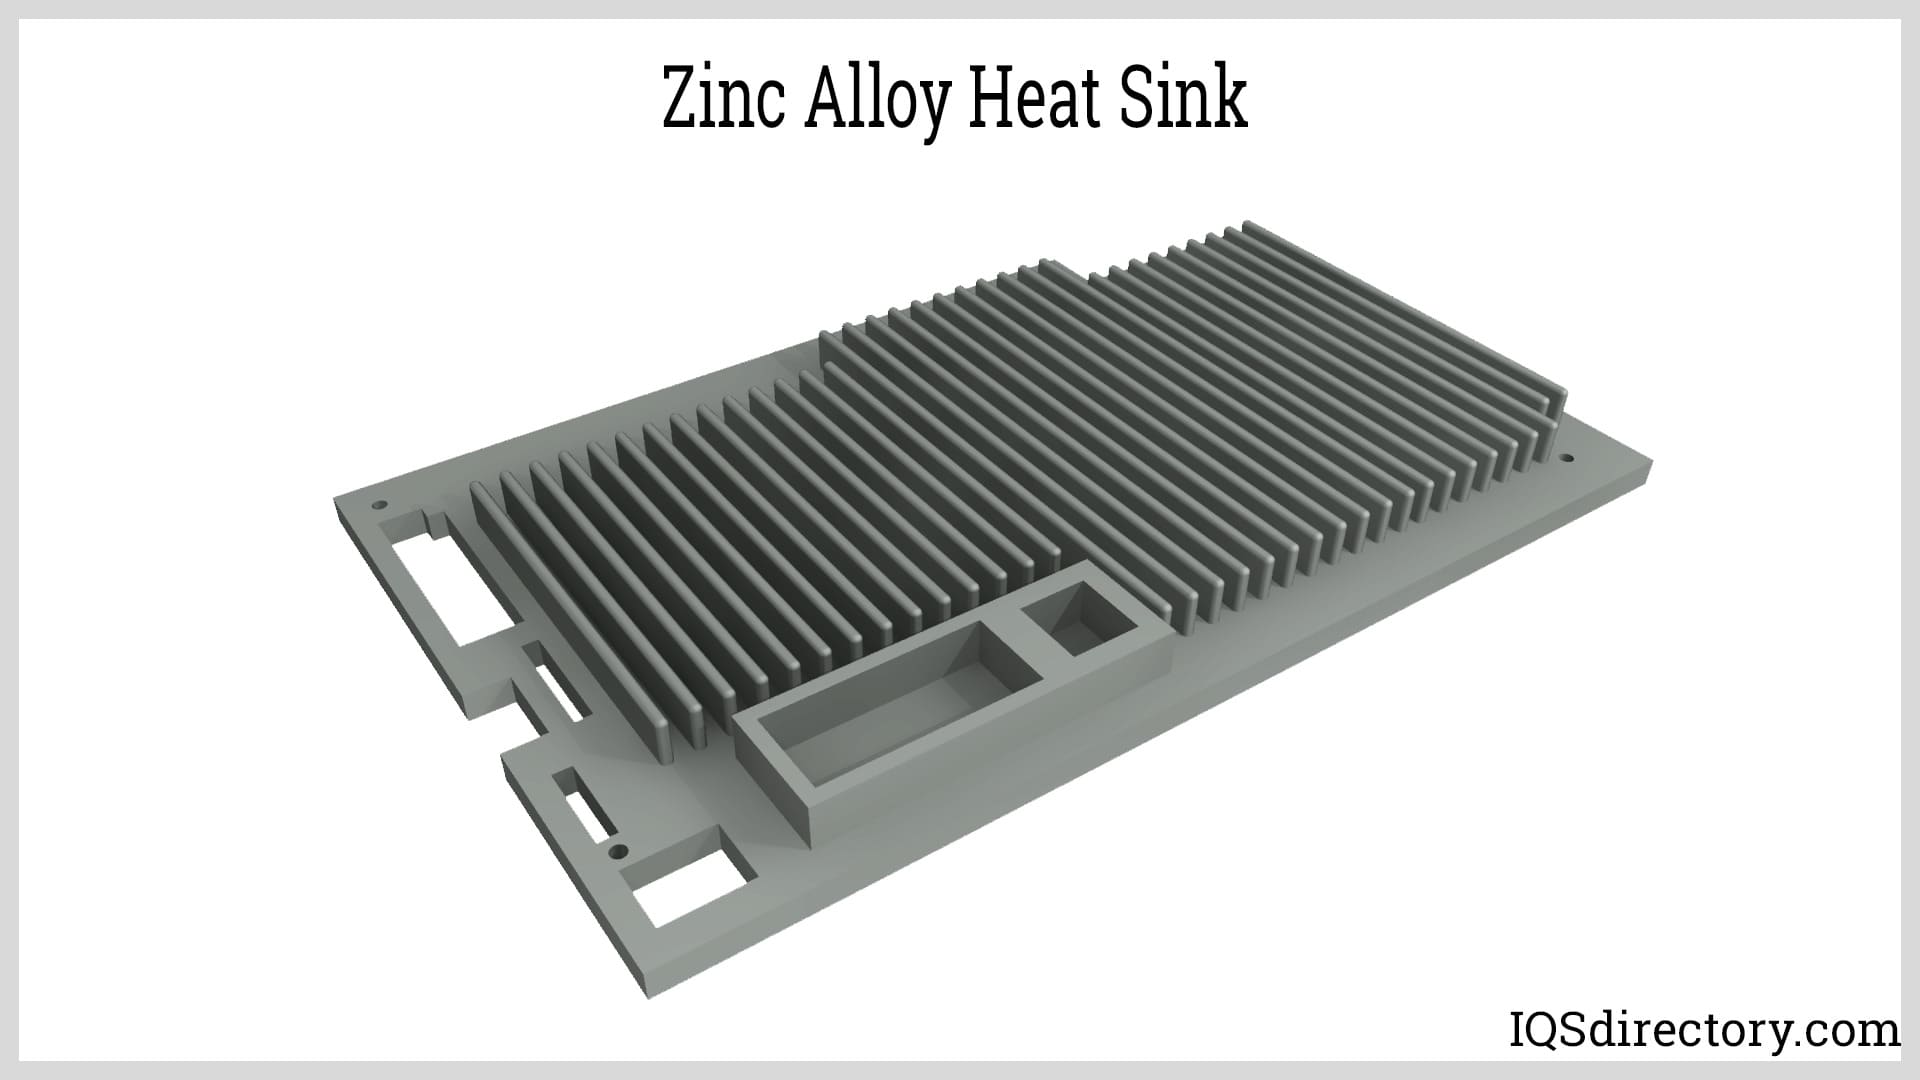 Zinc Alloy Heat Sink